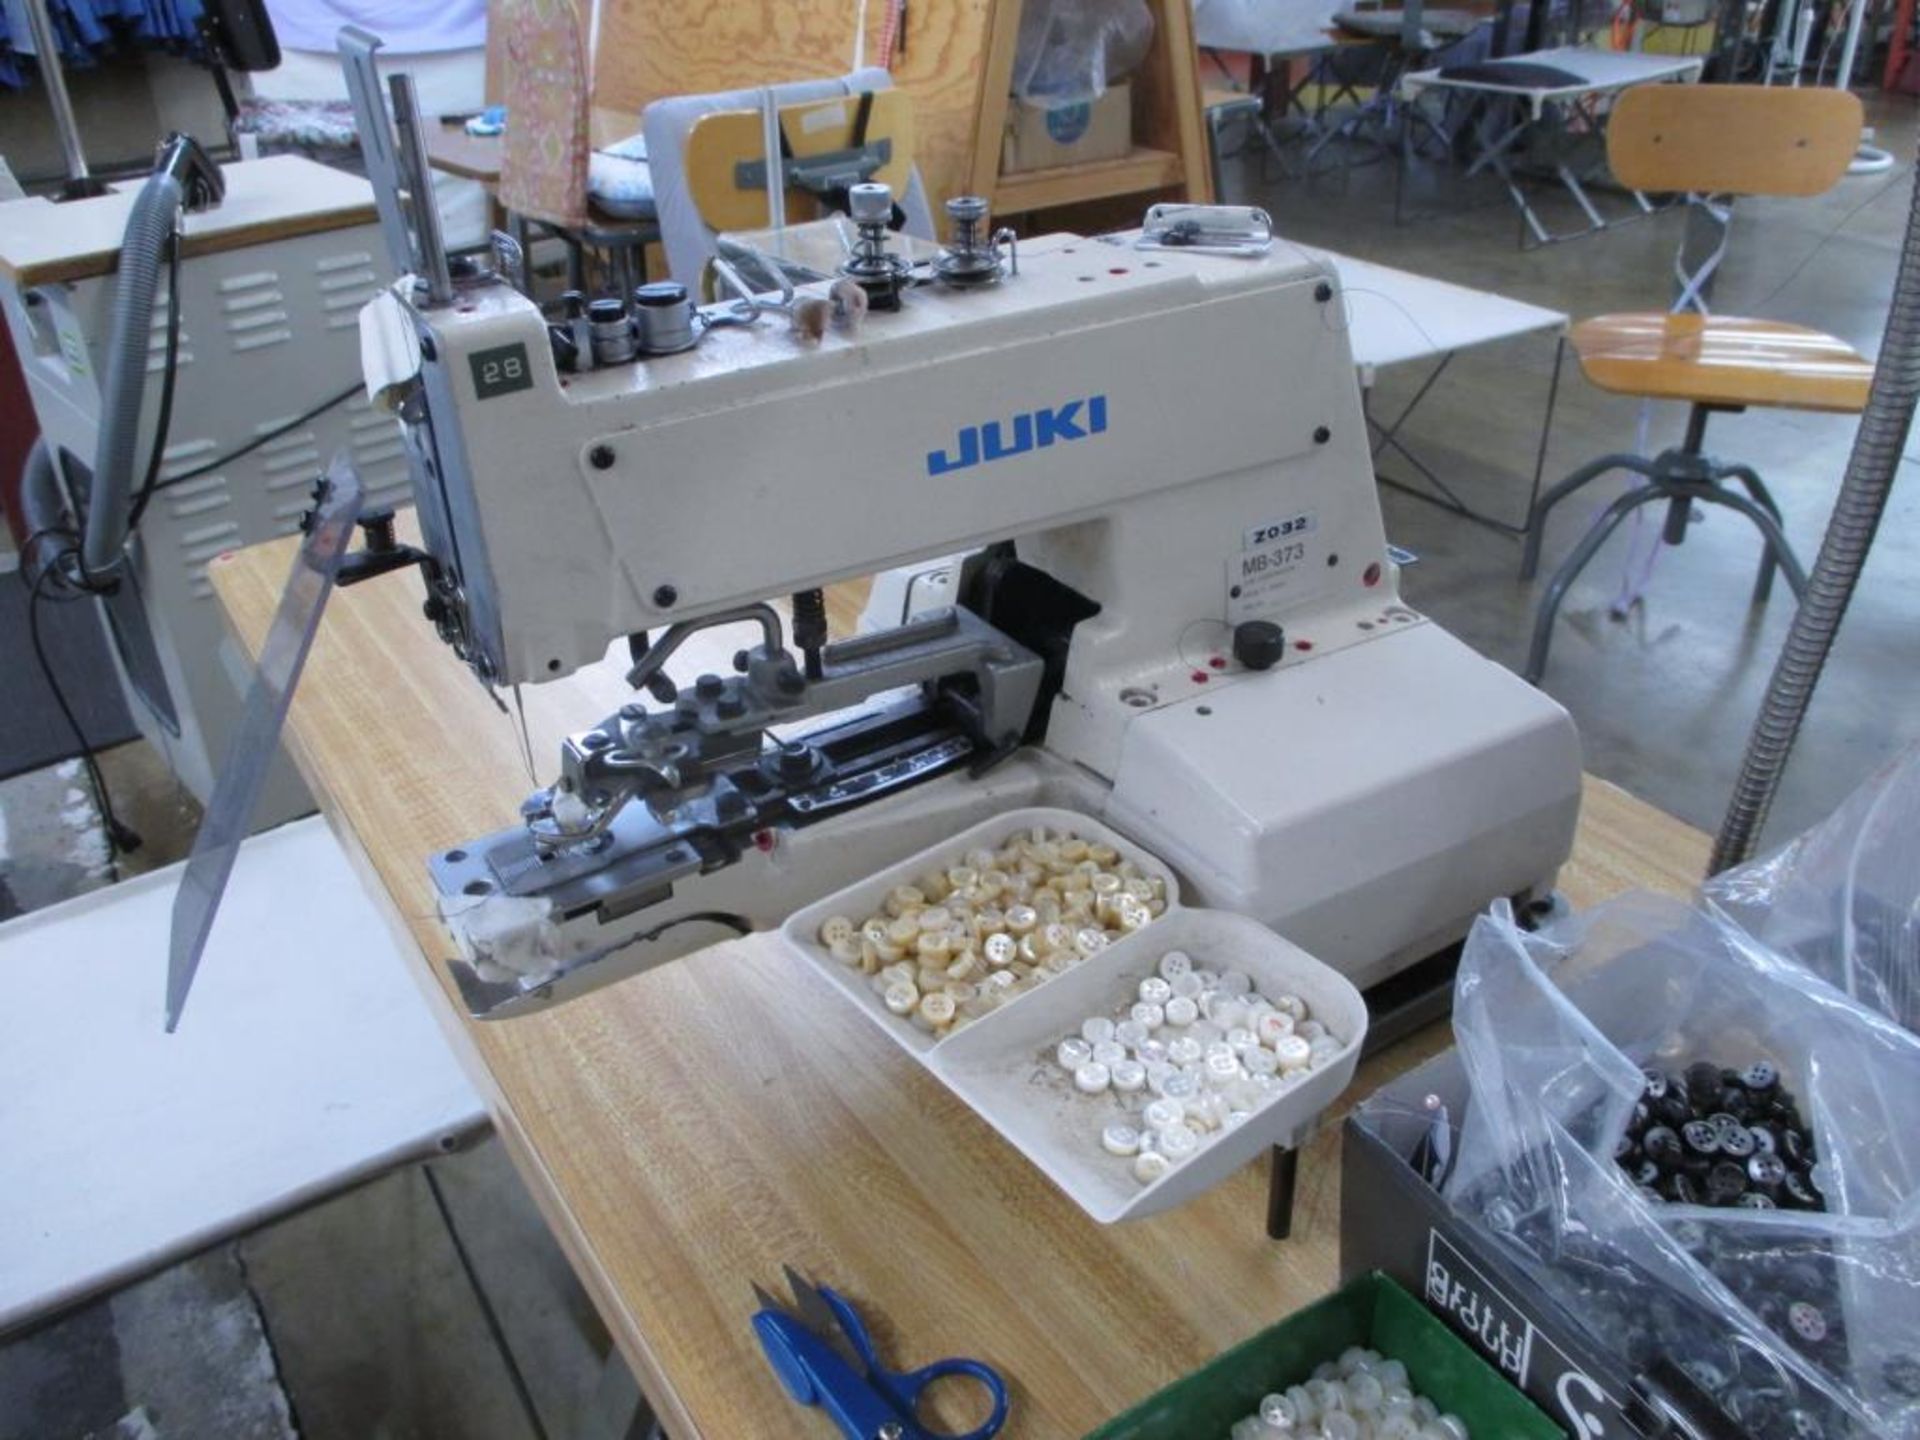 Automatic Button Sewing Machine. Juki MB-373 Z032 Automatic Button Sewing Machine, Chainstitch - Image 2 of 5